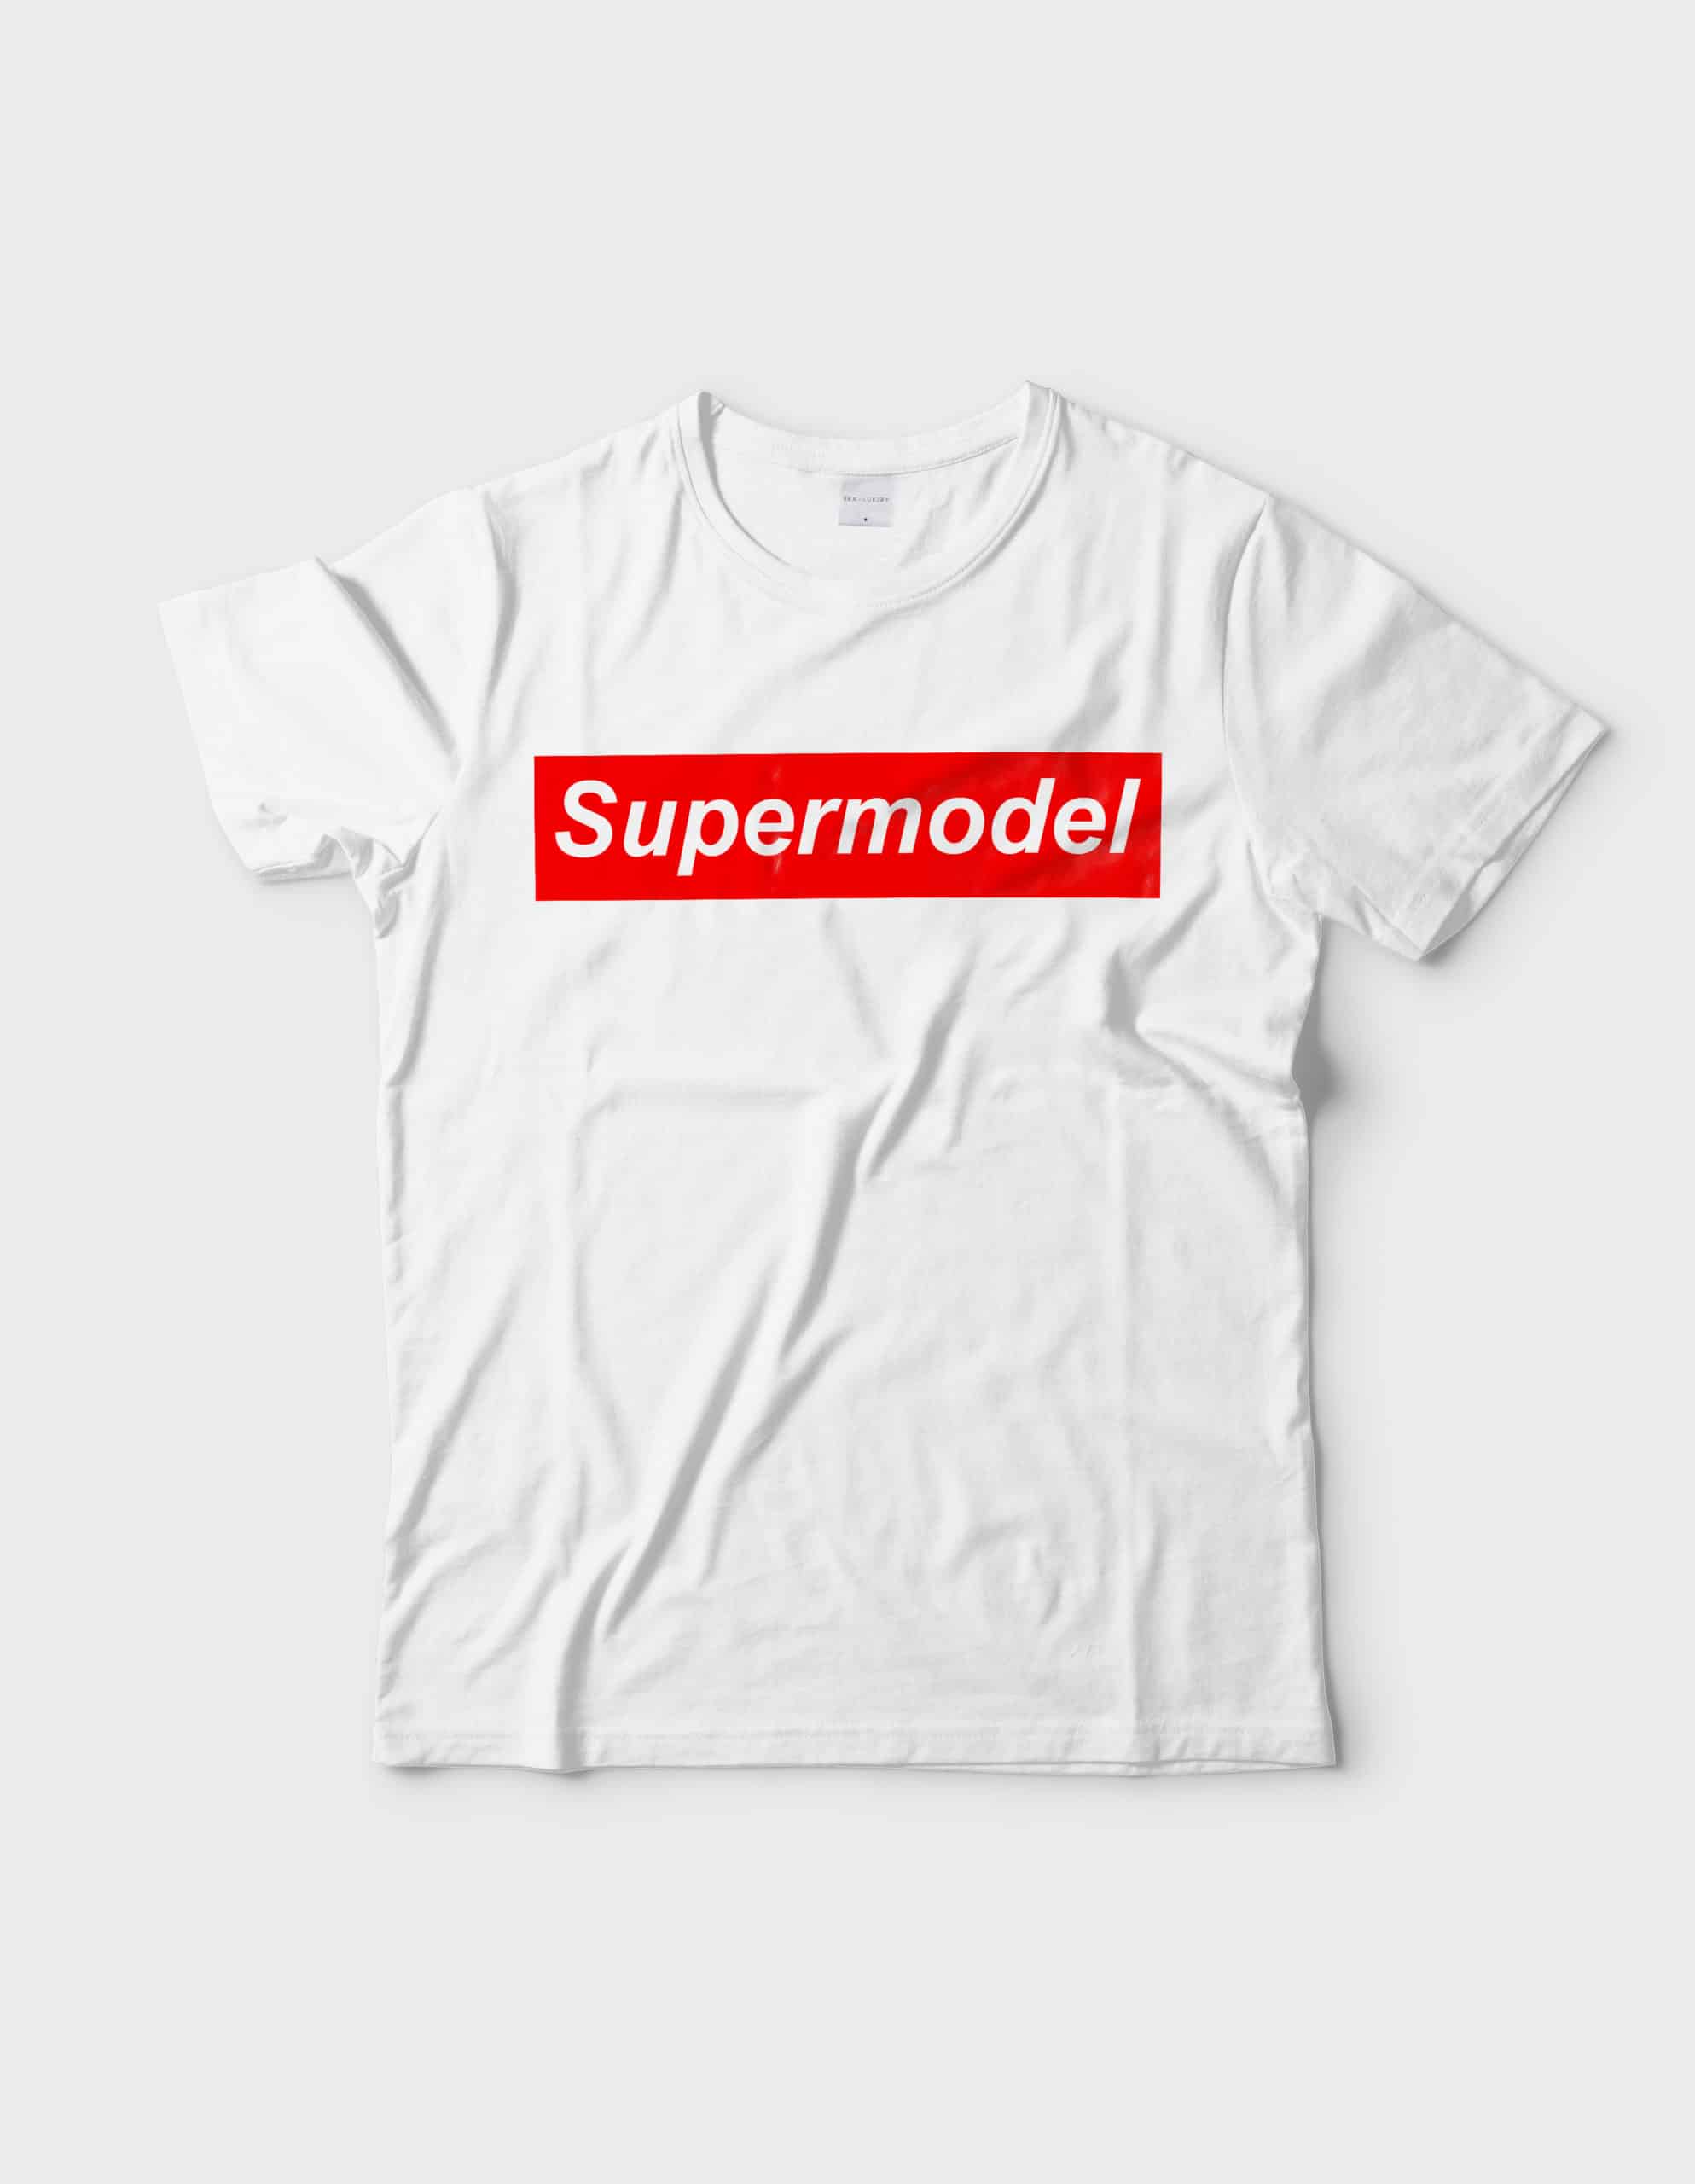 Supermodel Graphic White tee